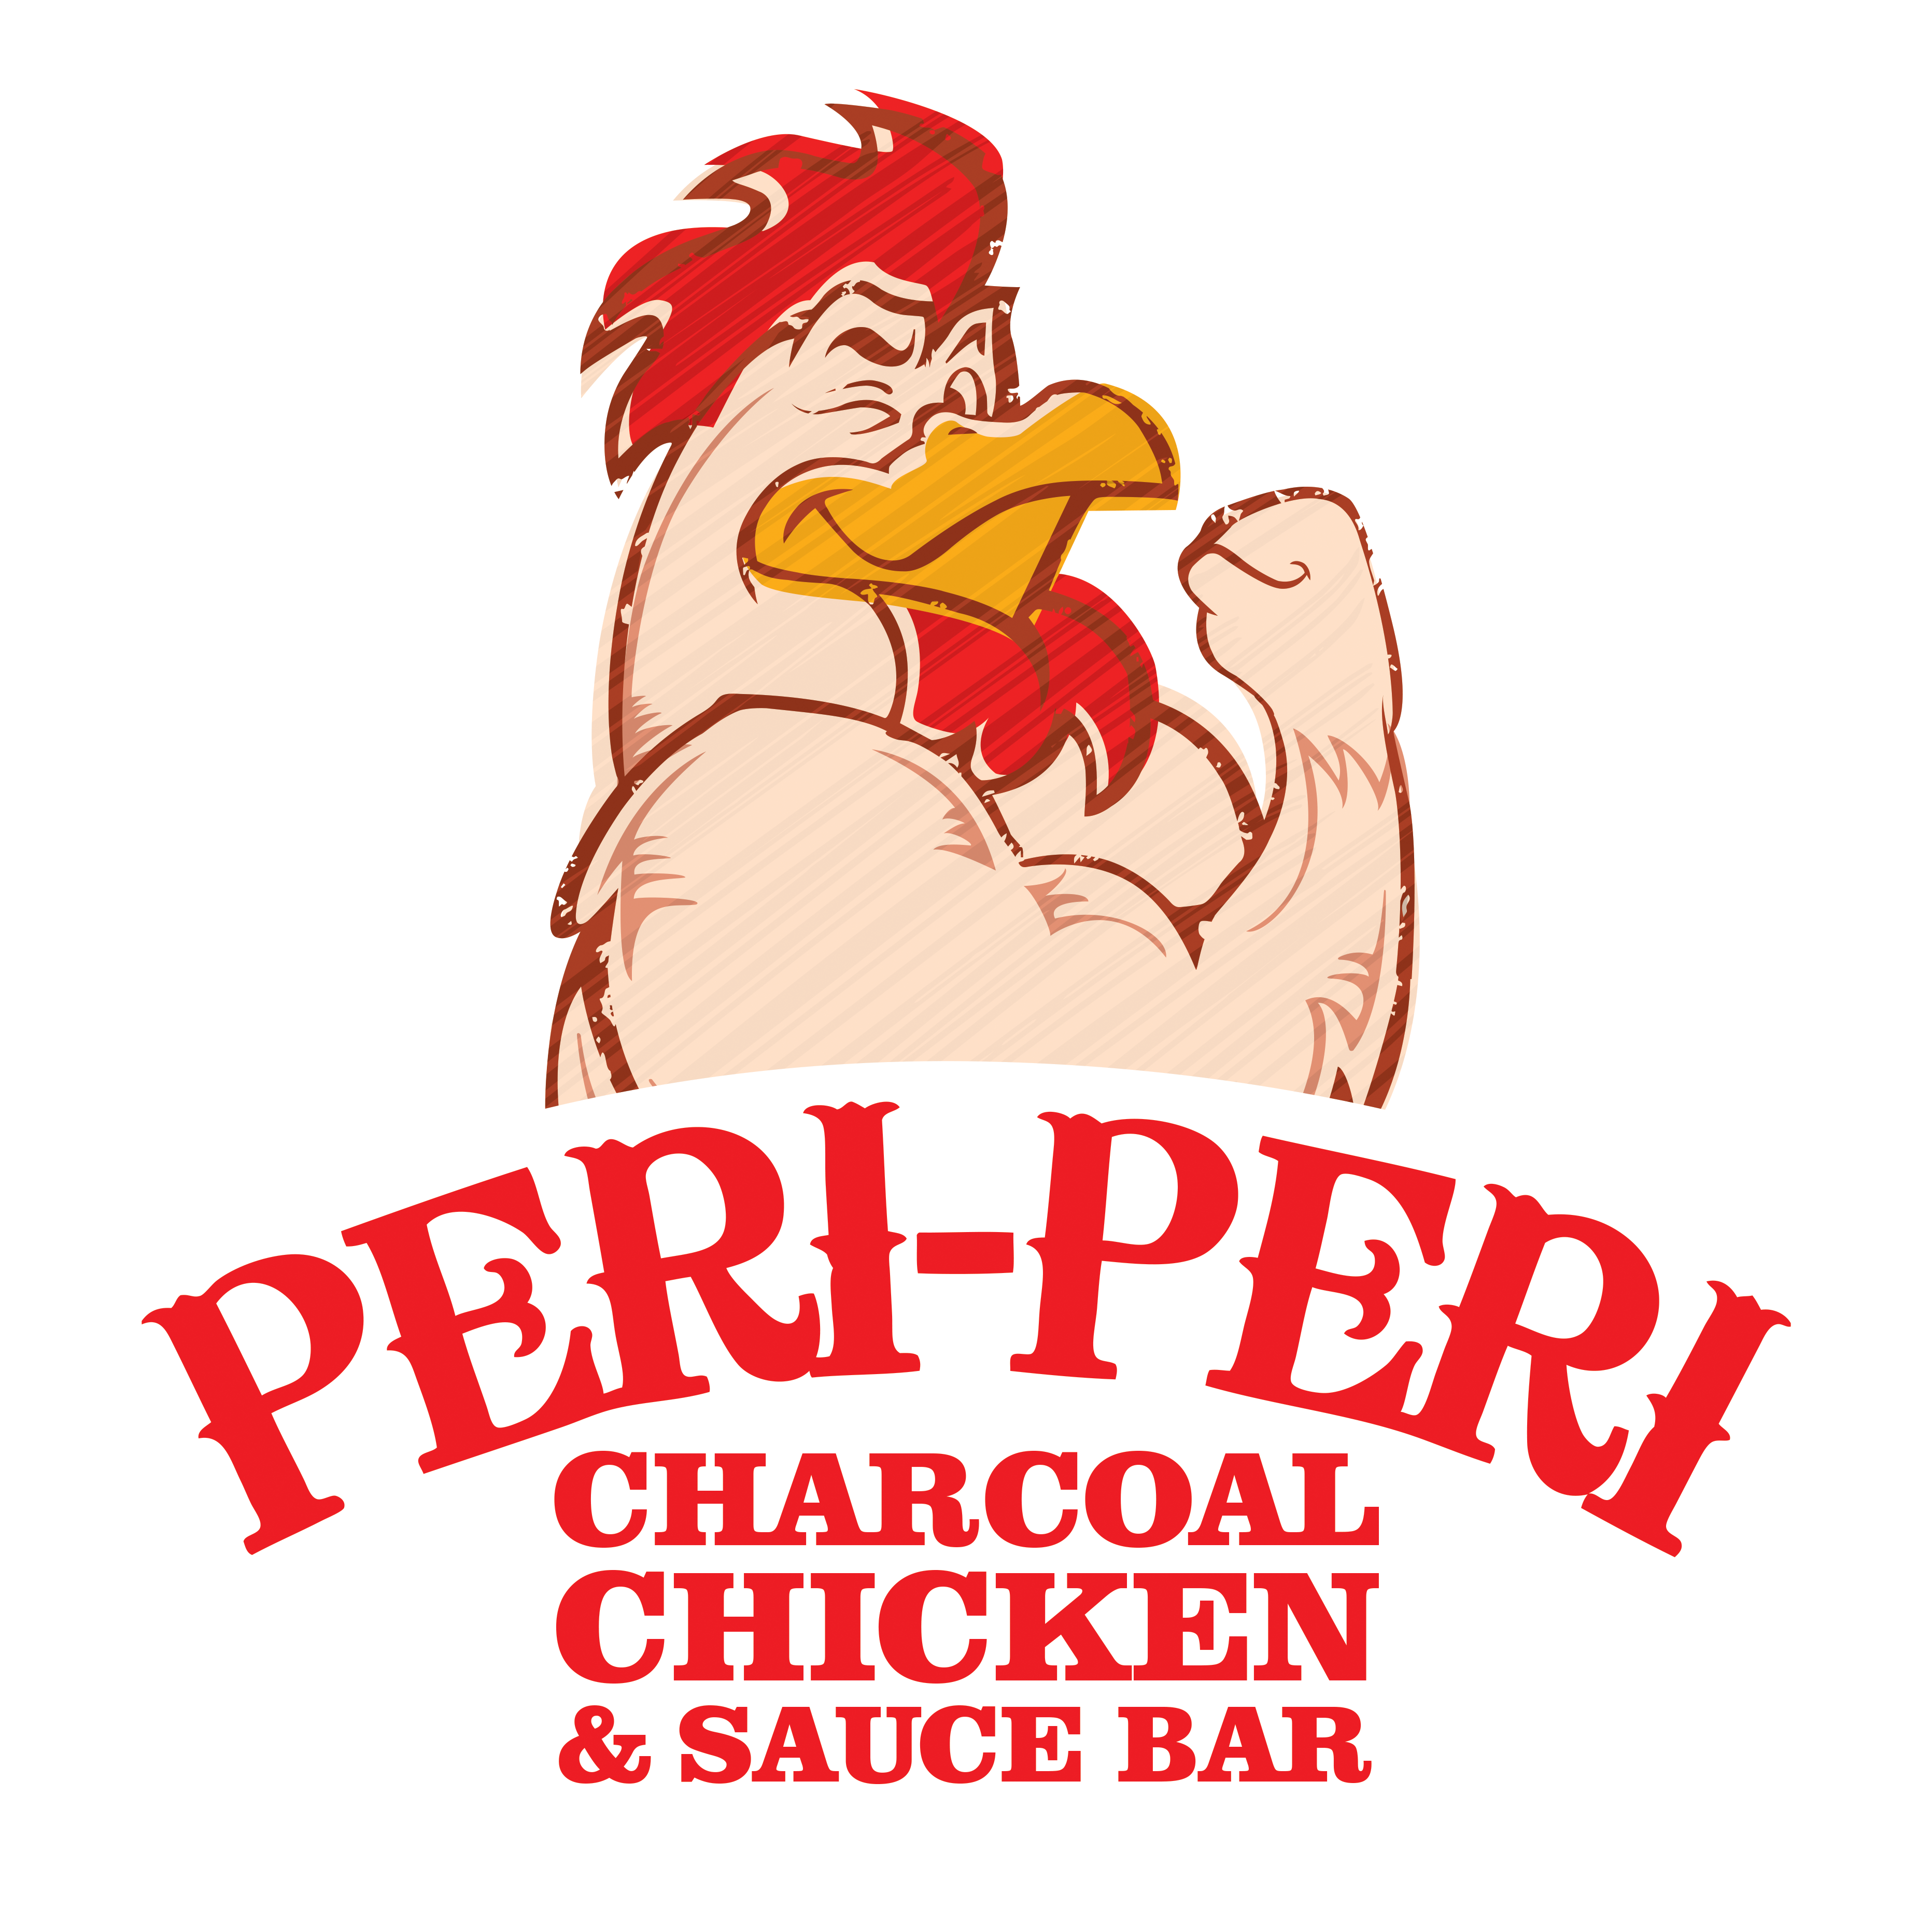 Peri-Peri